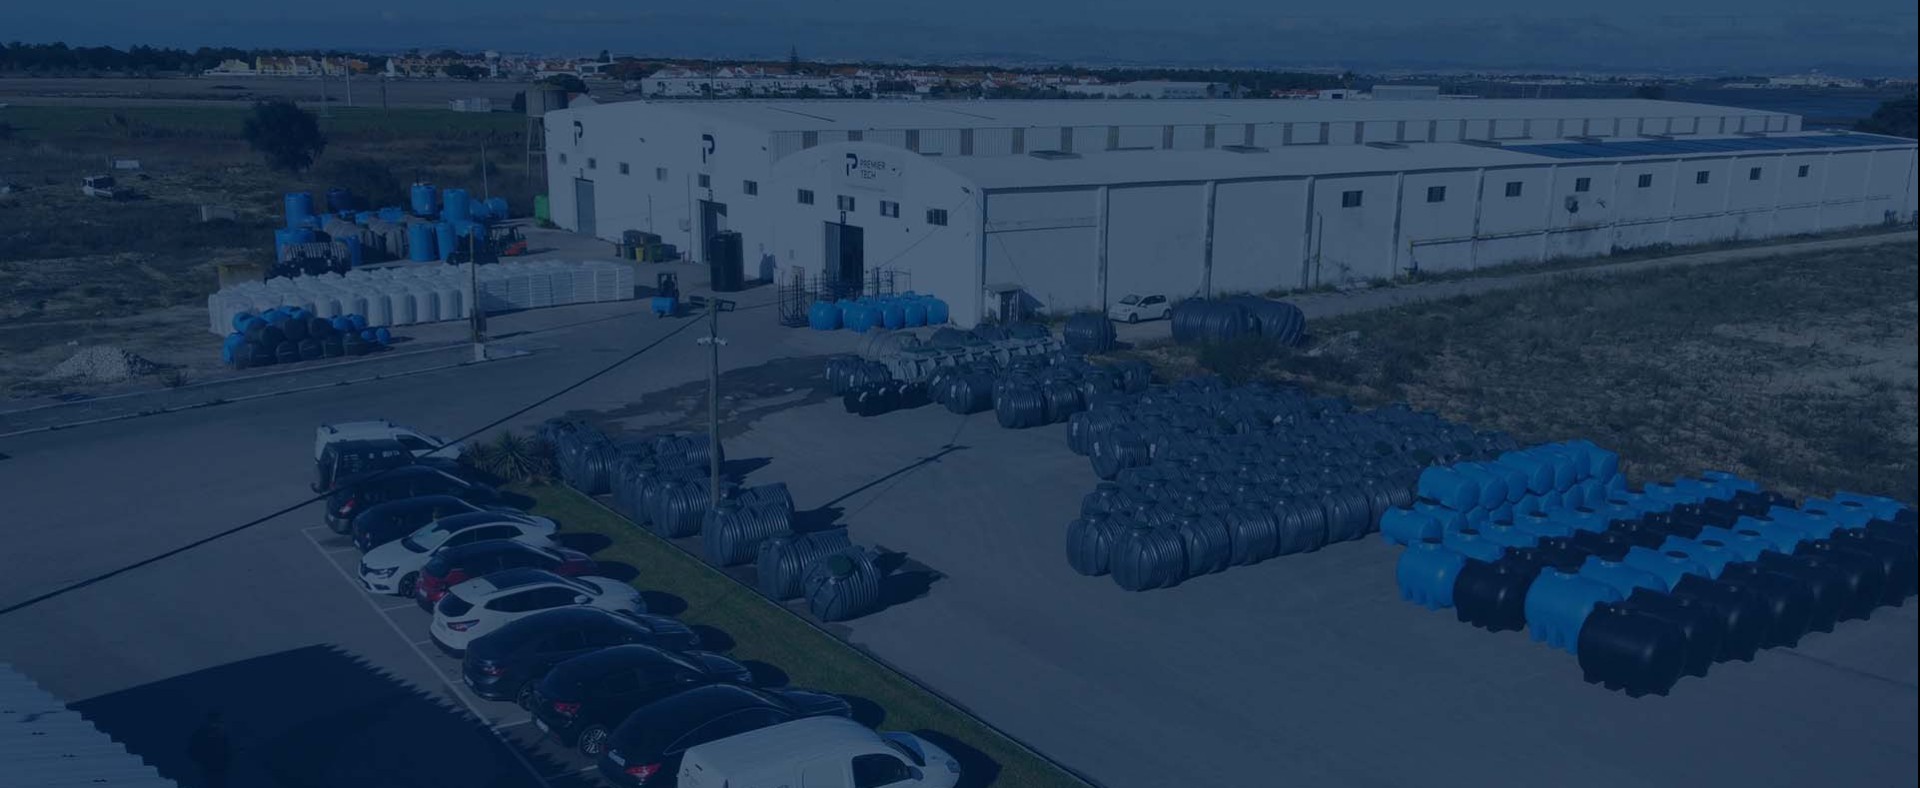 Fábrica da Premier Tech Water and Environment no Montijo, Portugal, soluções para armazenamento de líquidos, tratamento de águas residuais, e recuperação de águas pluviais.